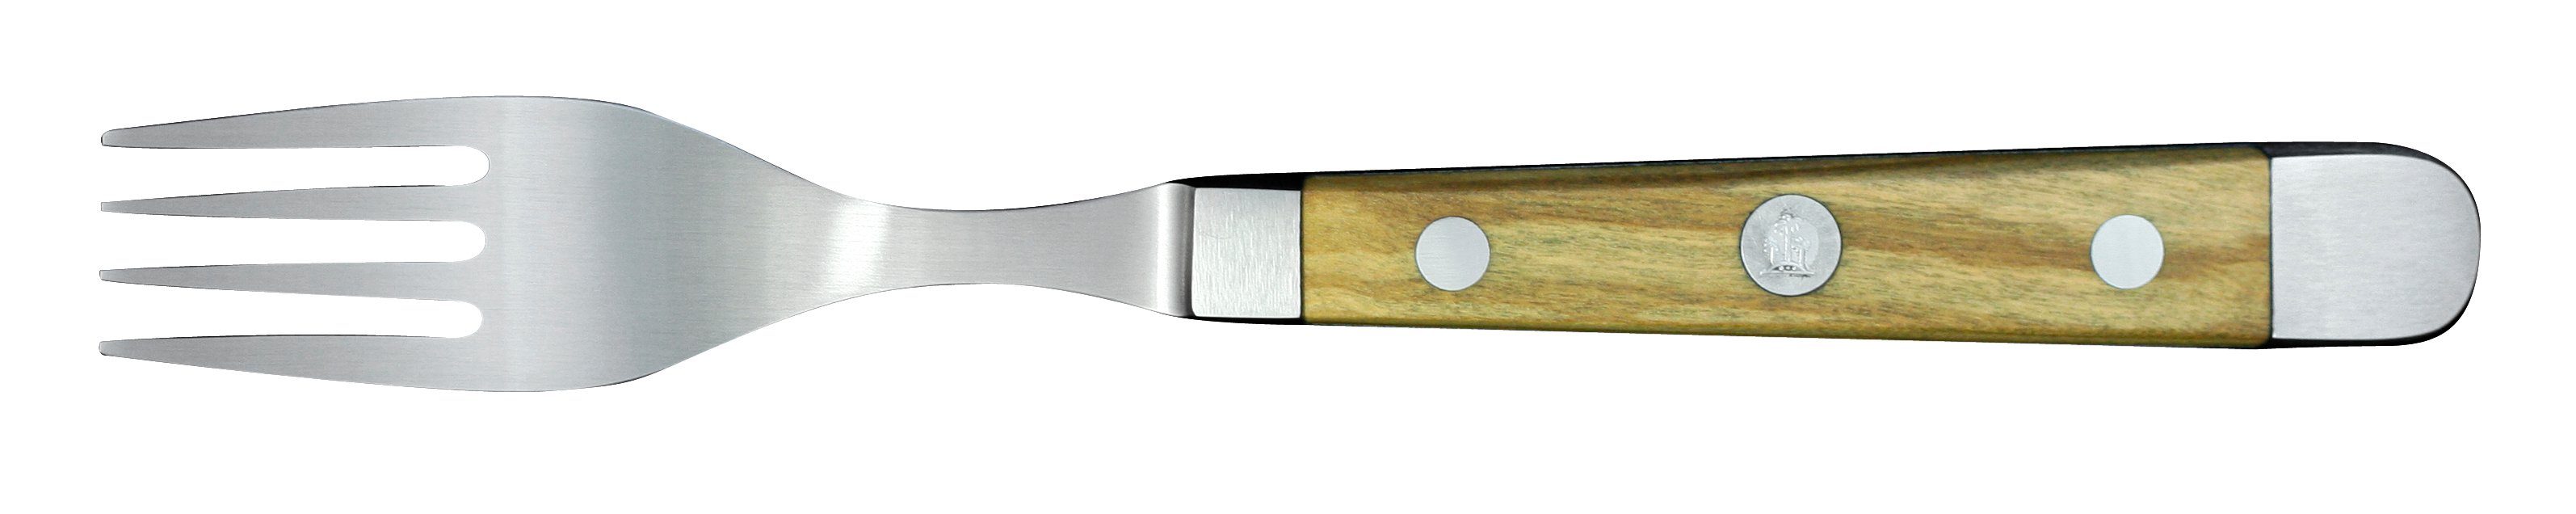 Güde Messer Solingen Tafelmesser Alpha Olive Tafelgabel 12 cm - CVM-Messerstahl - Griffschalen Olivenholz